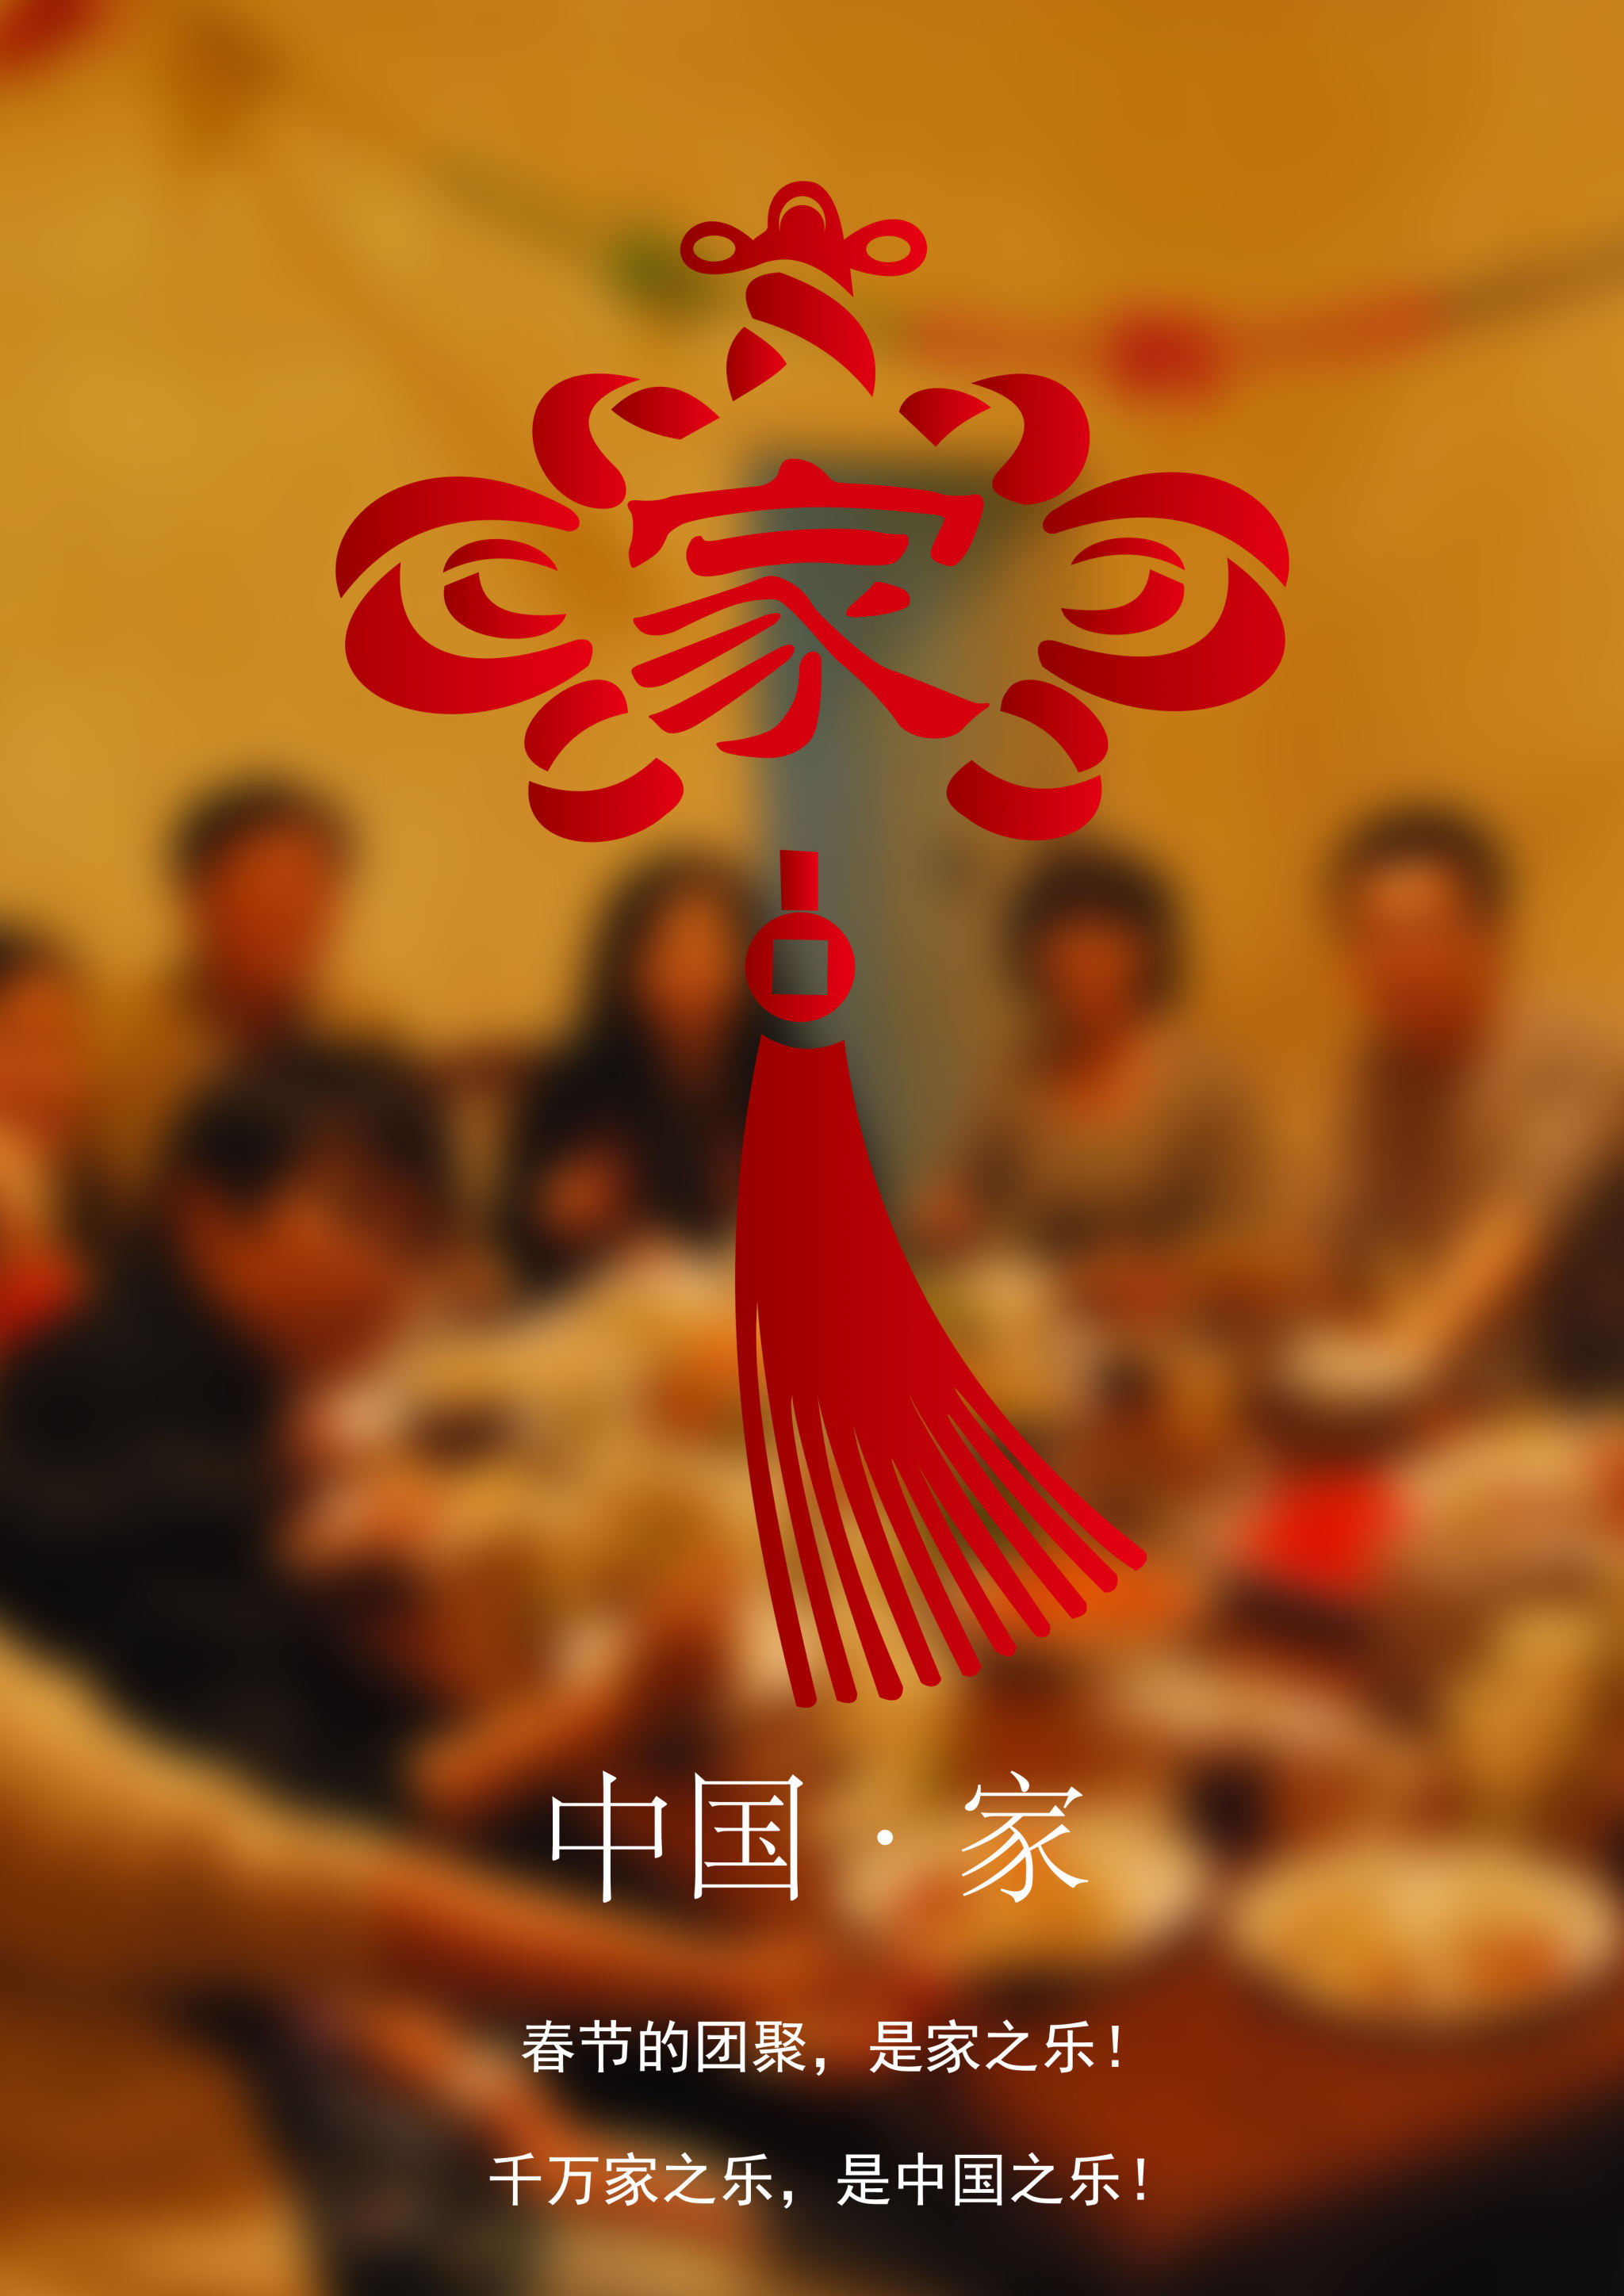 中国结象征着团结幸福,并将"家"字融入中国结中.